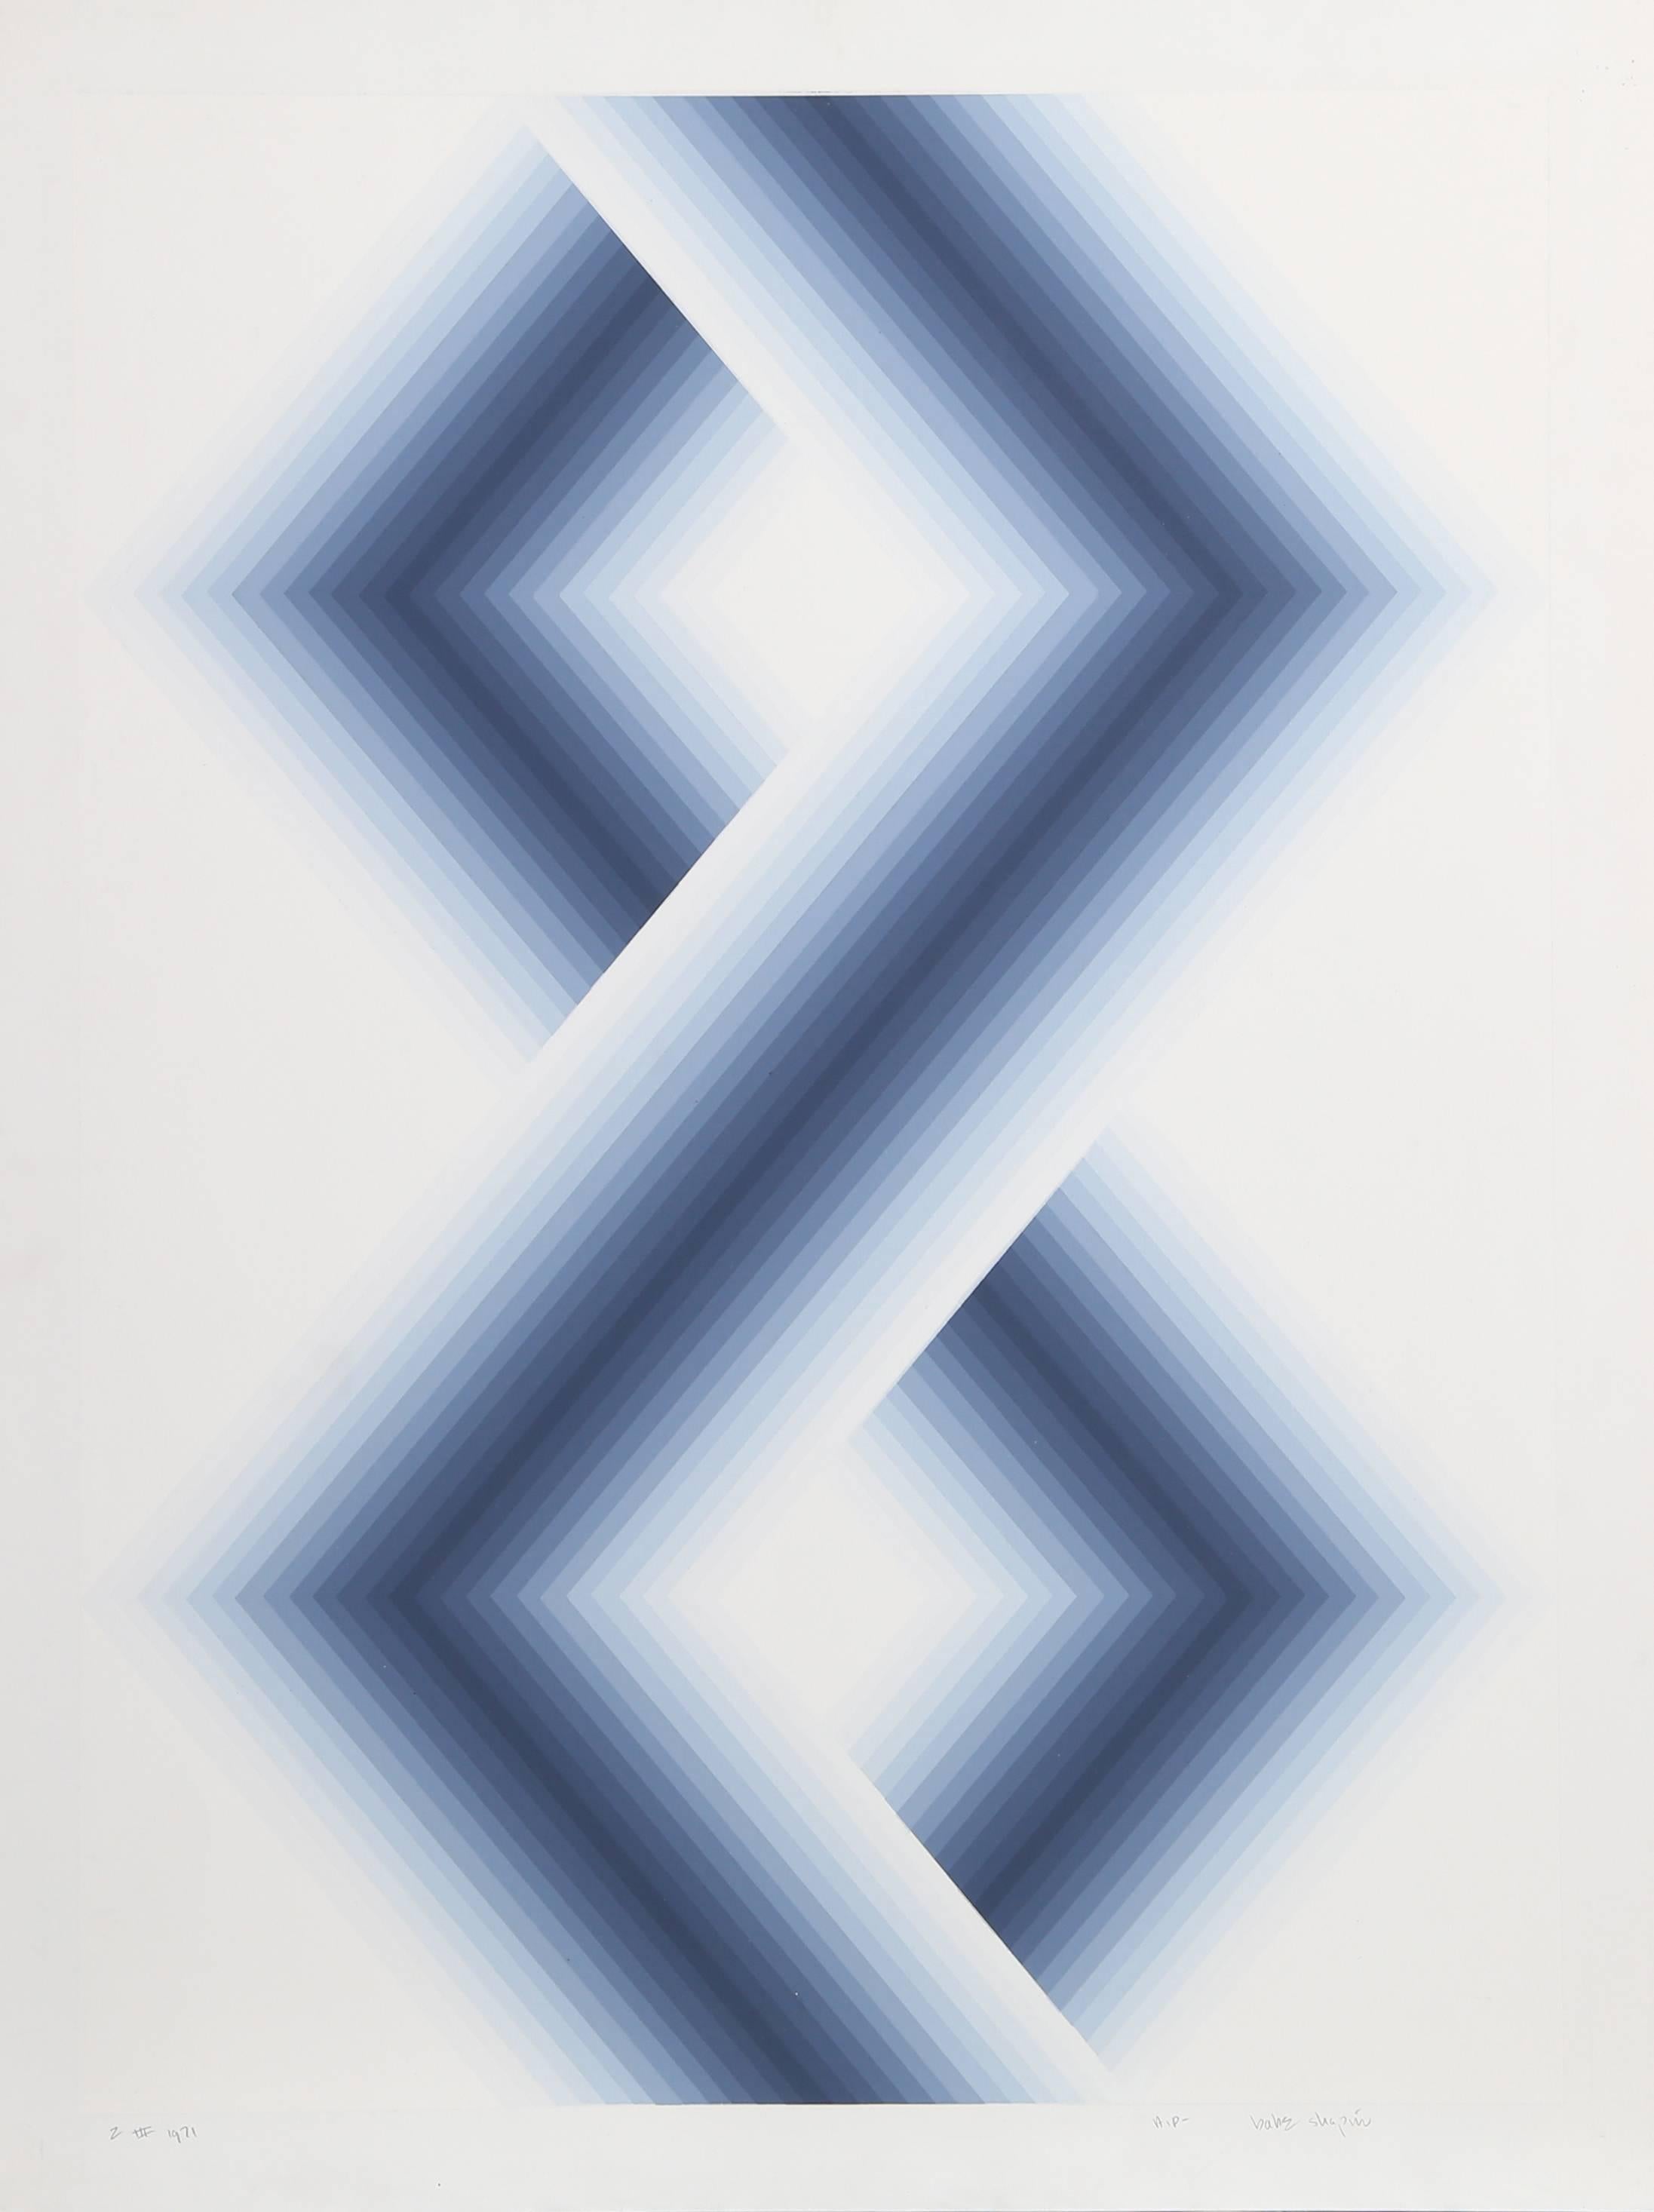 Sechseckige blaue Leinwände, geometrischer Raumteiler von Babe Shapiro